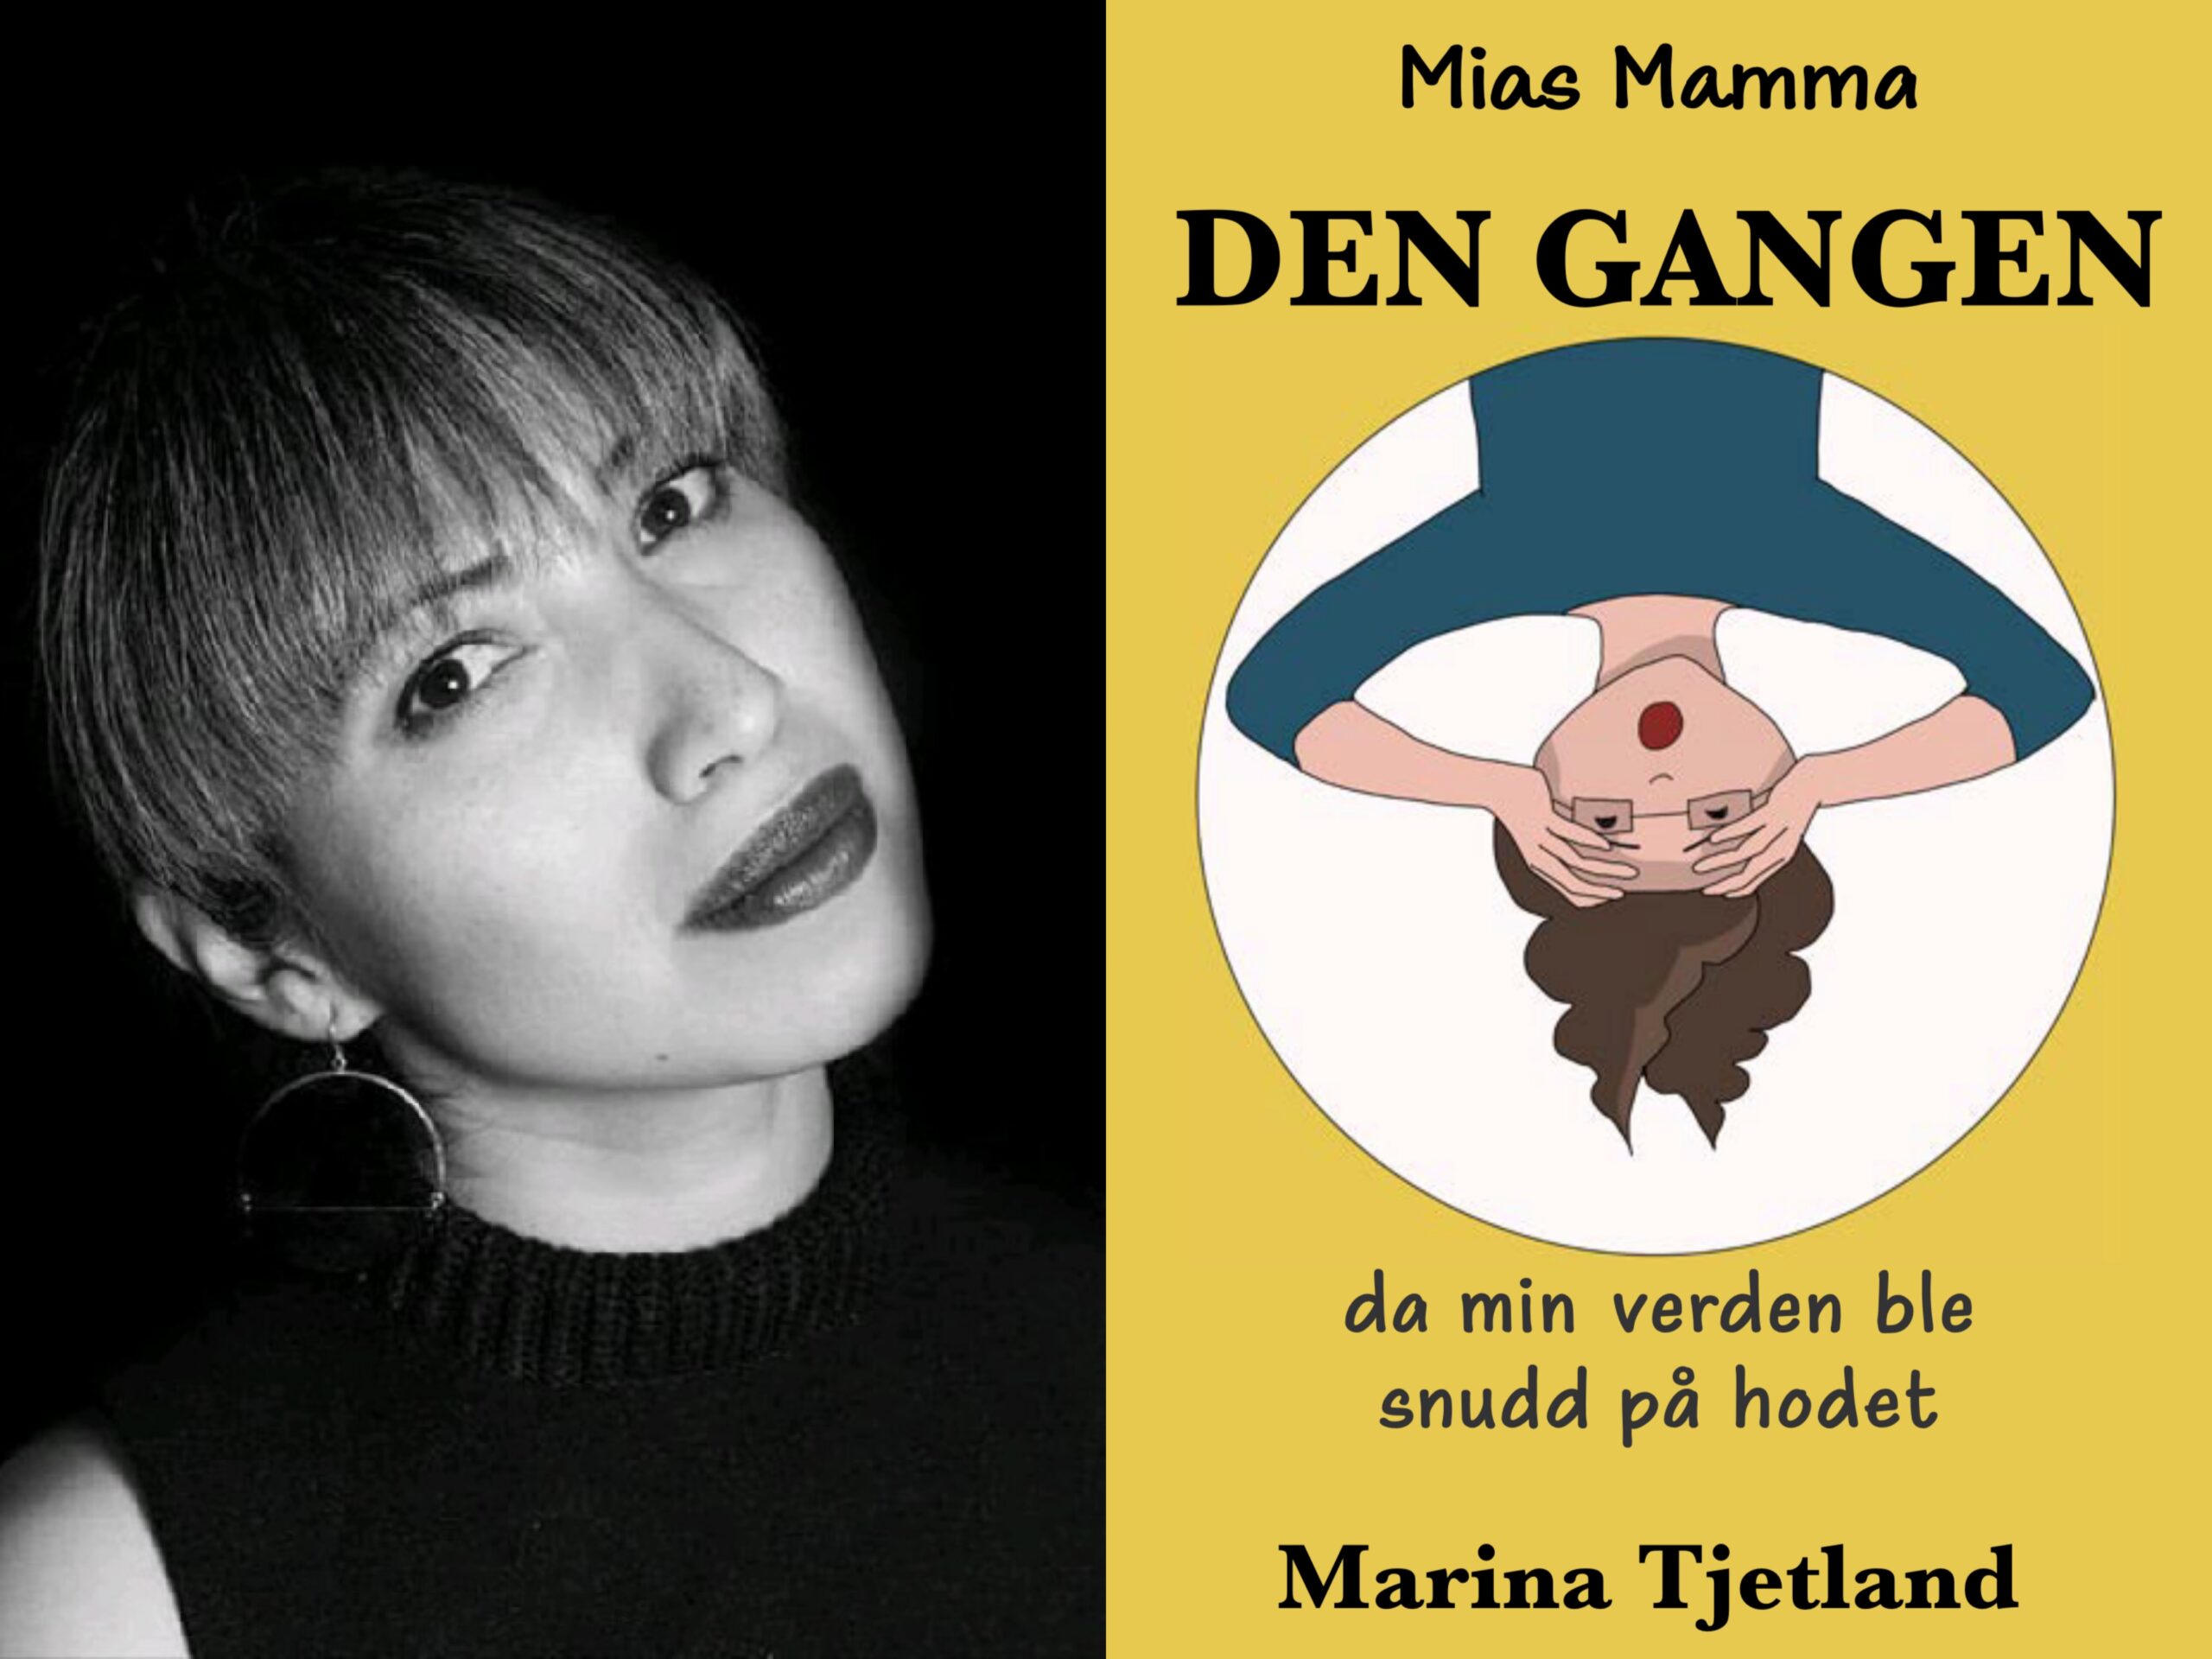 Interview with Marina Tjetland - Navigating Motherhood through Comics